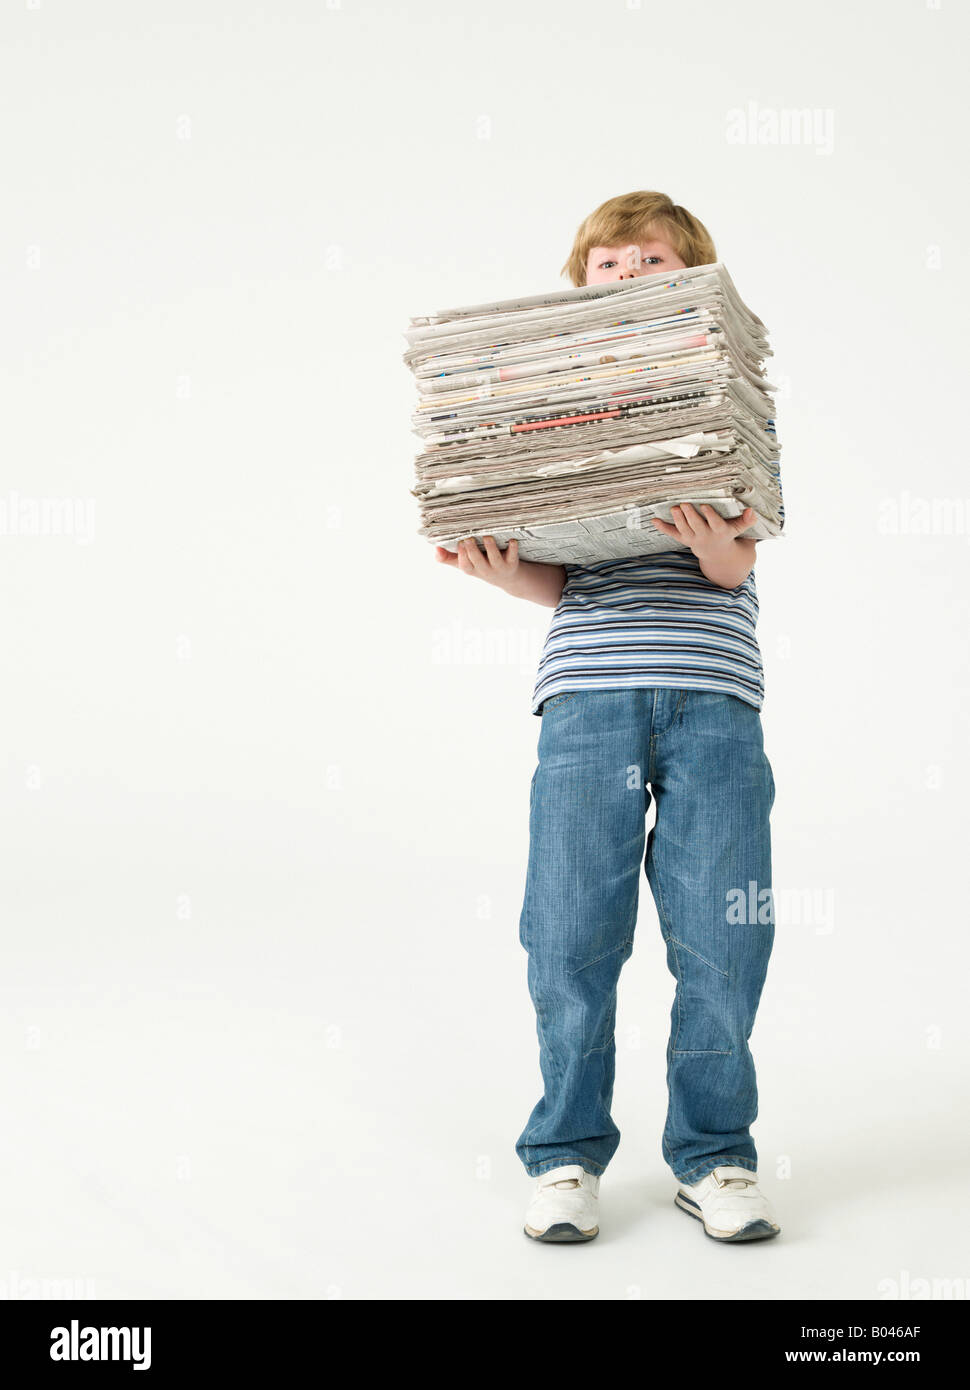 Boy holding une pile de journaux Banque D'Images